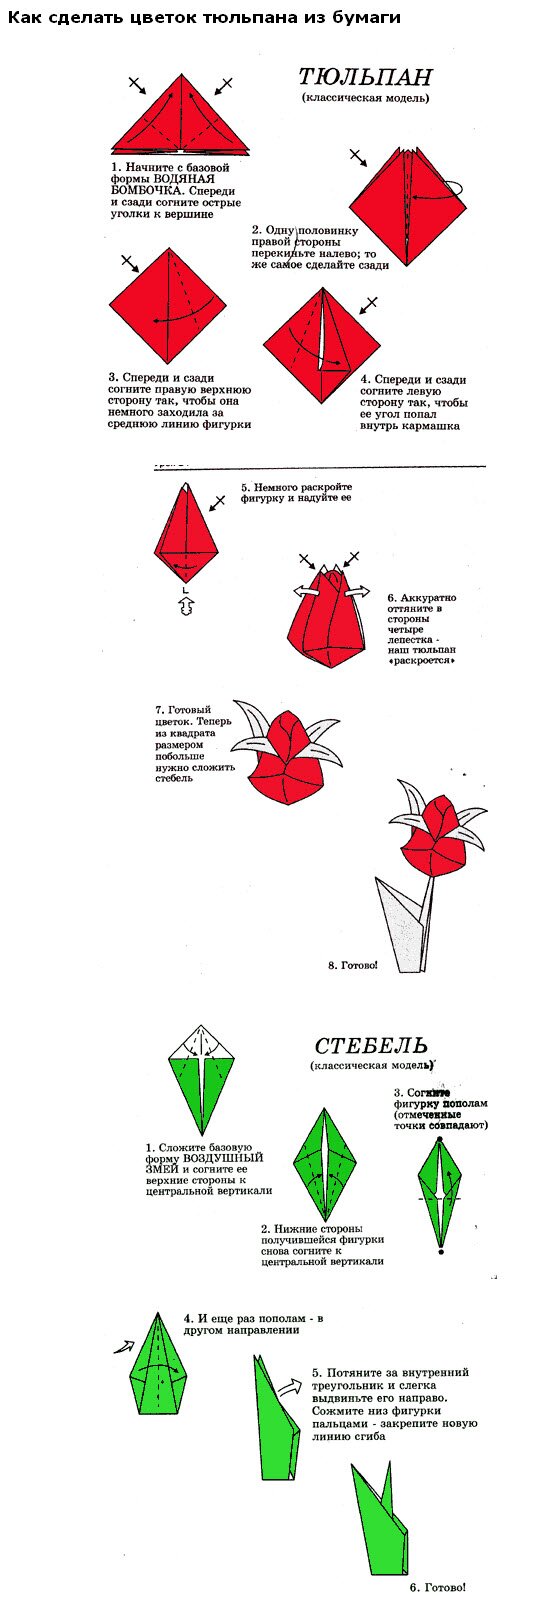 цветок из бумаги оригами схема